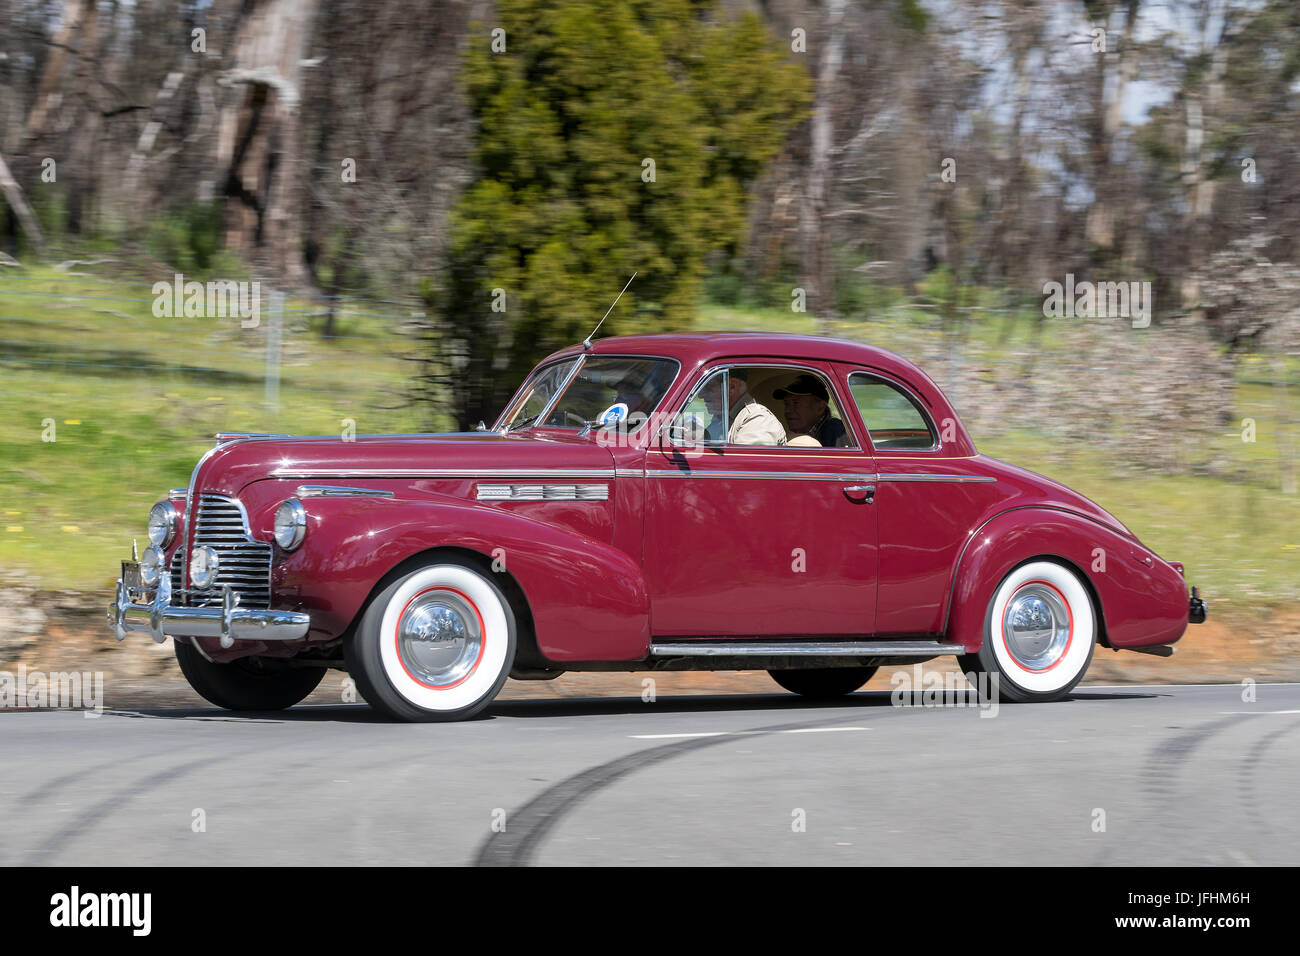 Jahrgang 1940 Buick Special Coupé fahren auf der Landstraße in der Nähe der Stadt Birdwood, South Australia. Stockfoto